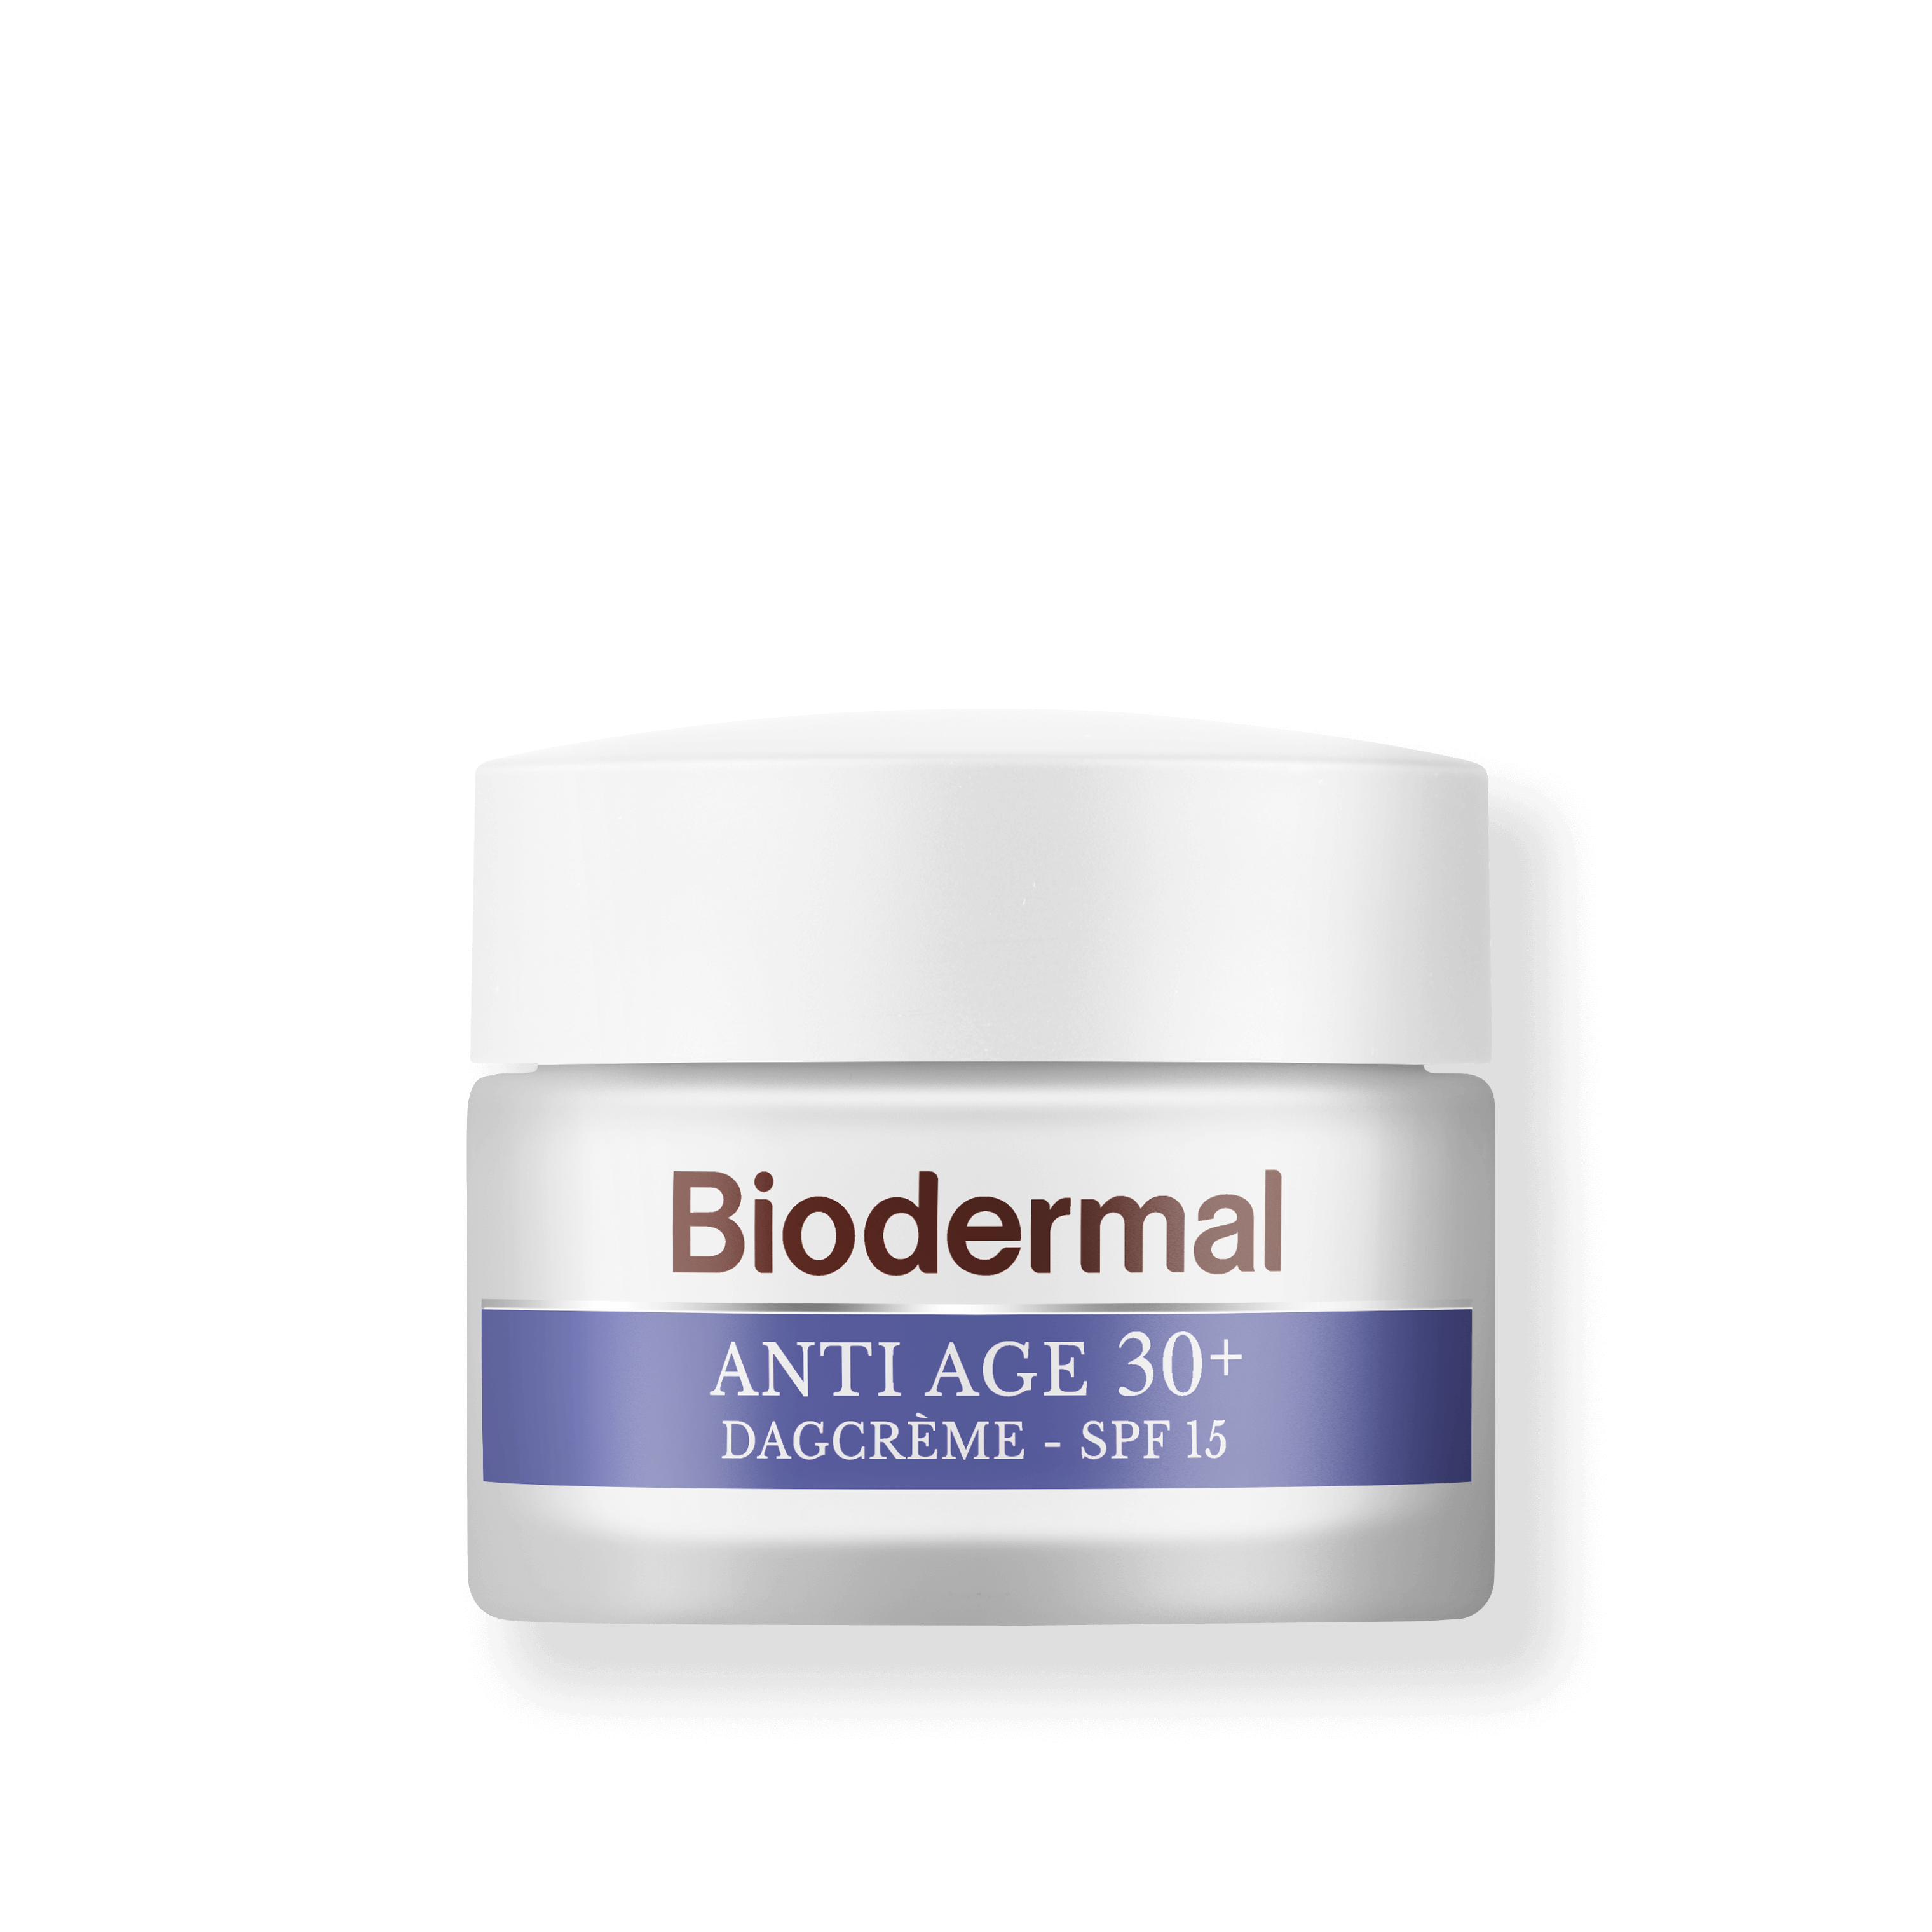 hebben zich vergist cent Exclusief Anti Age 30+ dagcrème van Biodermal | Biodermal